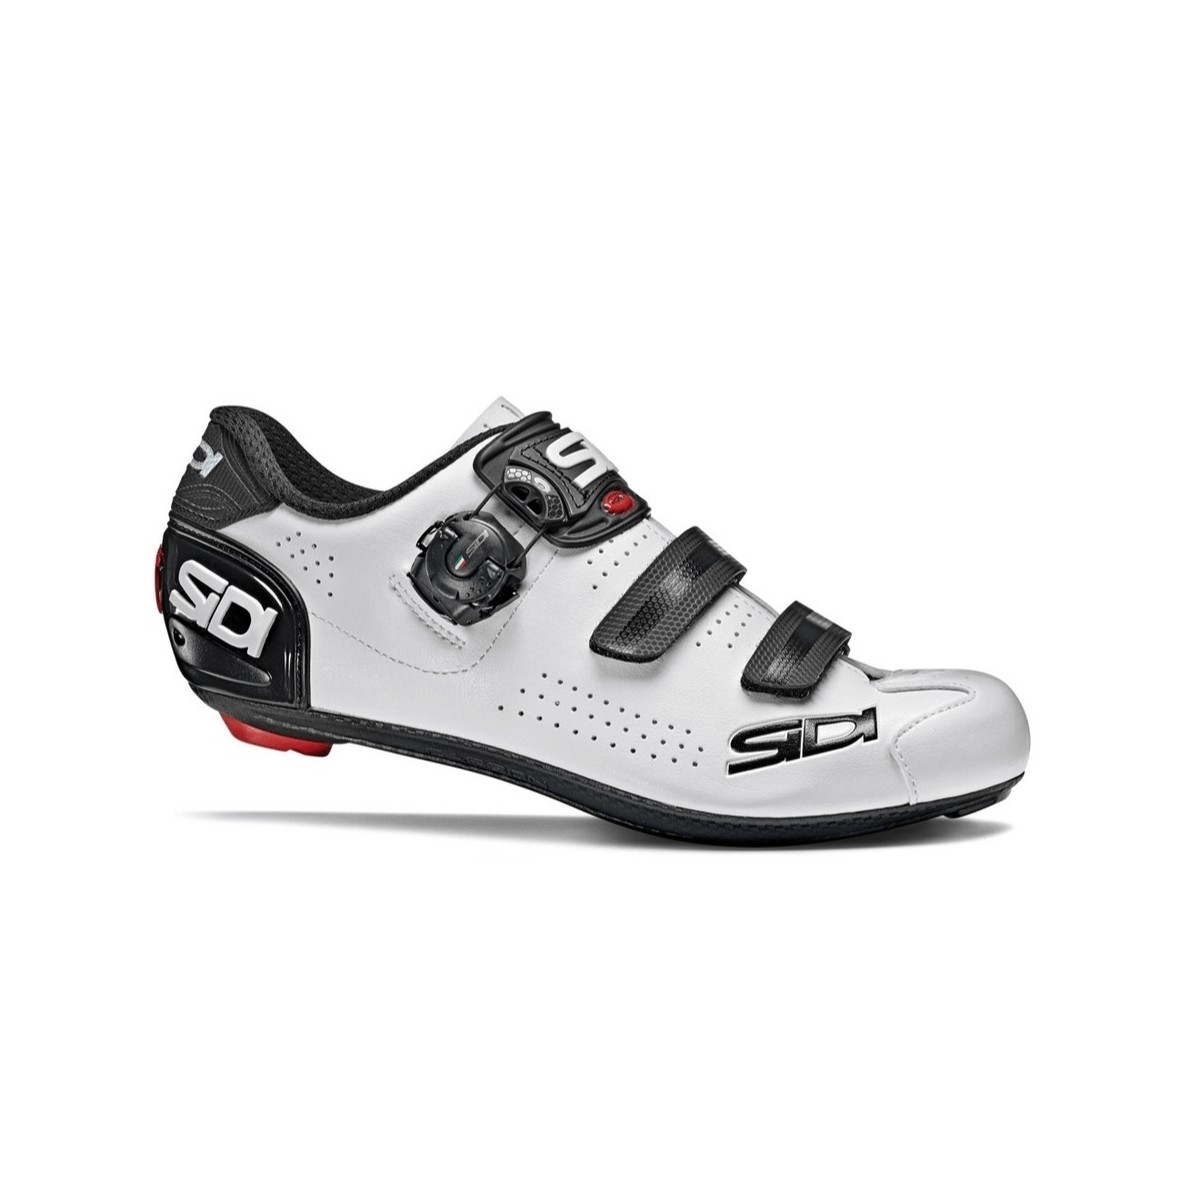 Sidi Alba 2 Cycling Shoes White Black, Size 42 - EUR